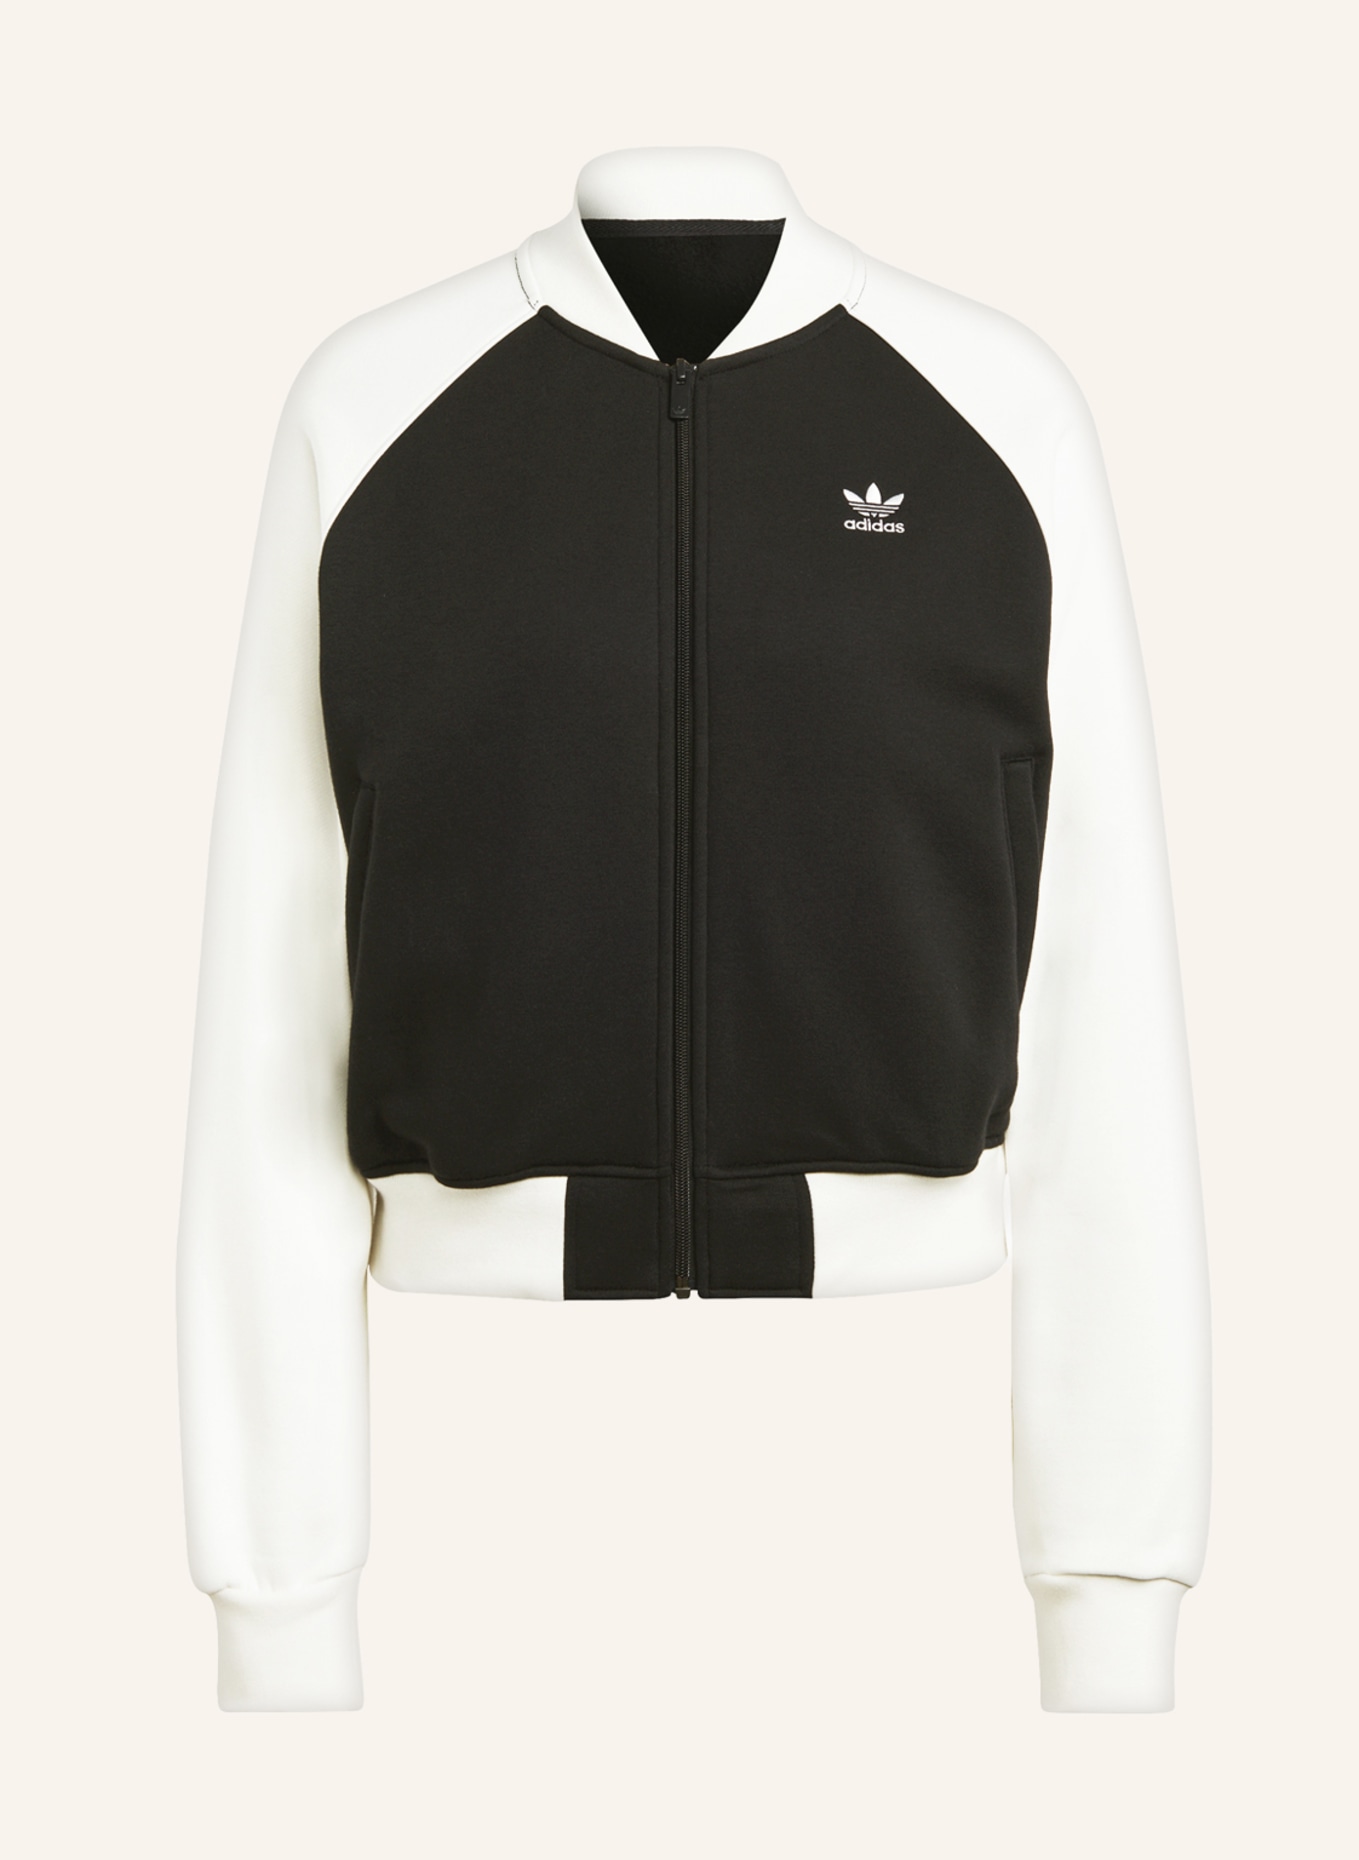 TREFOIL Sweat adidas ecru ADICOLOR jacket CLASSICS in Originals black/